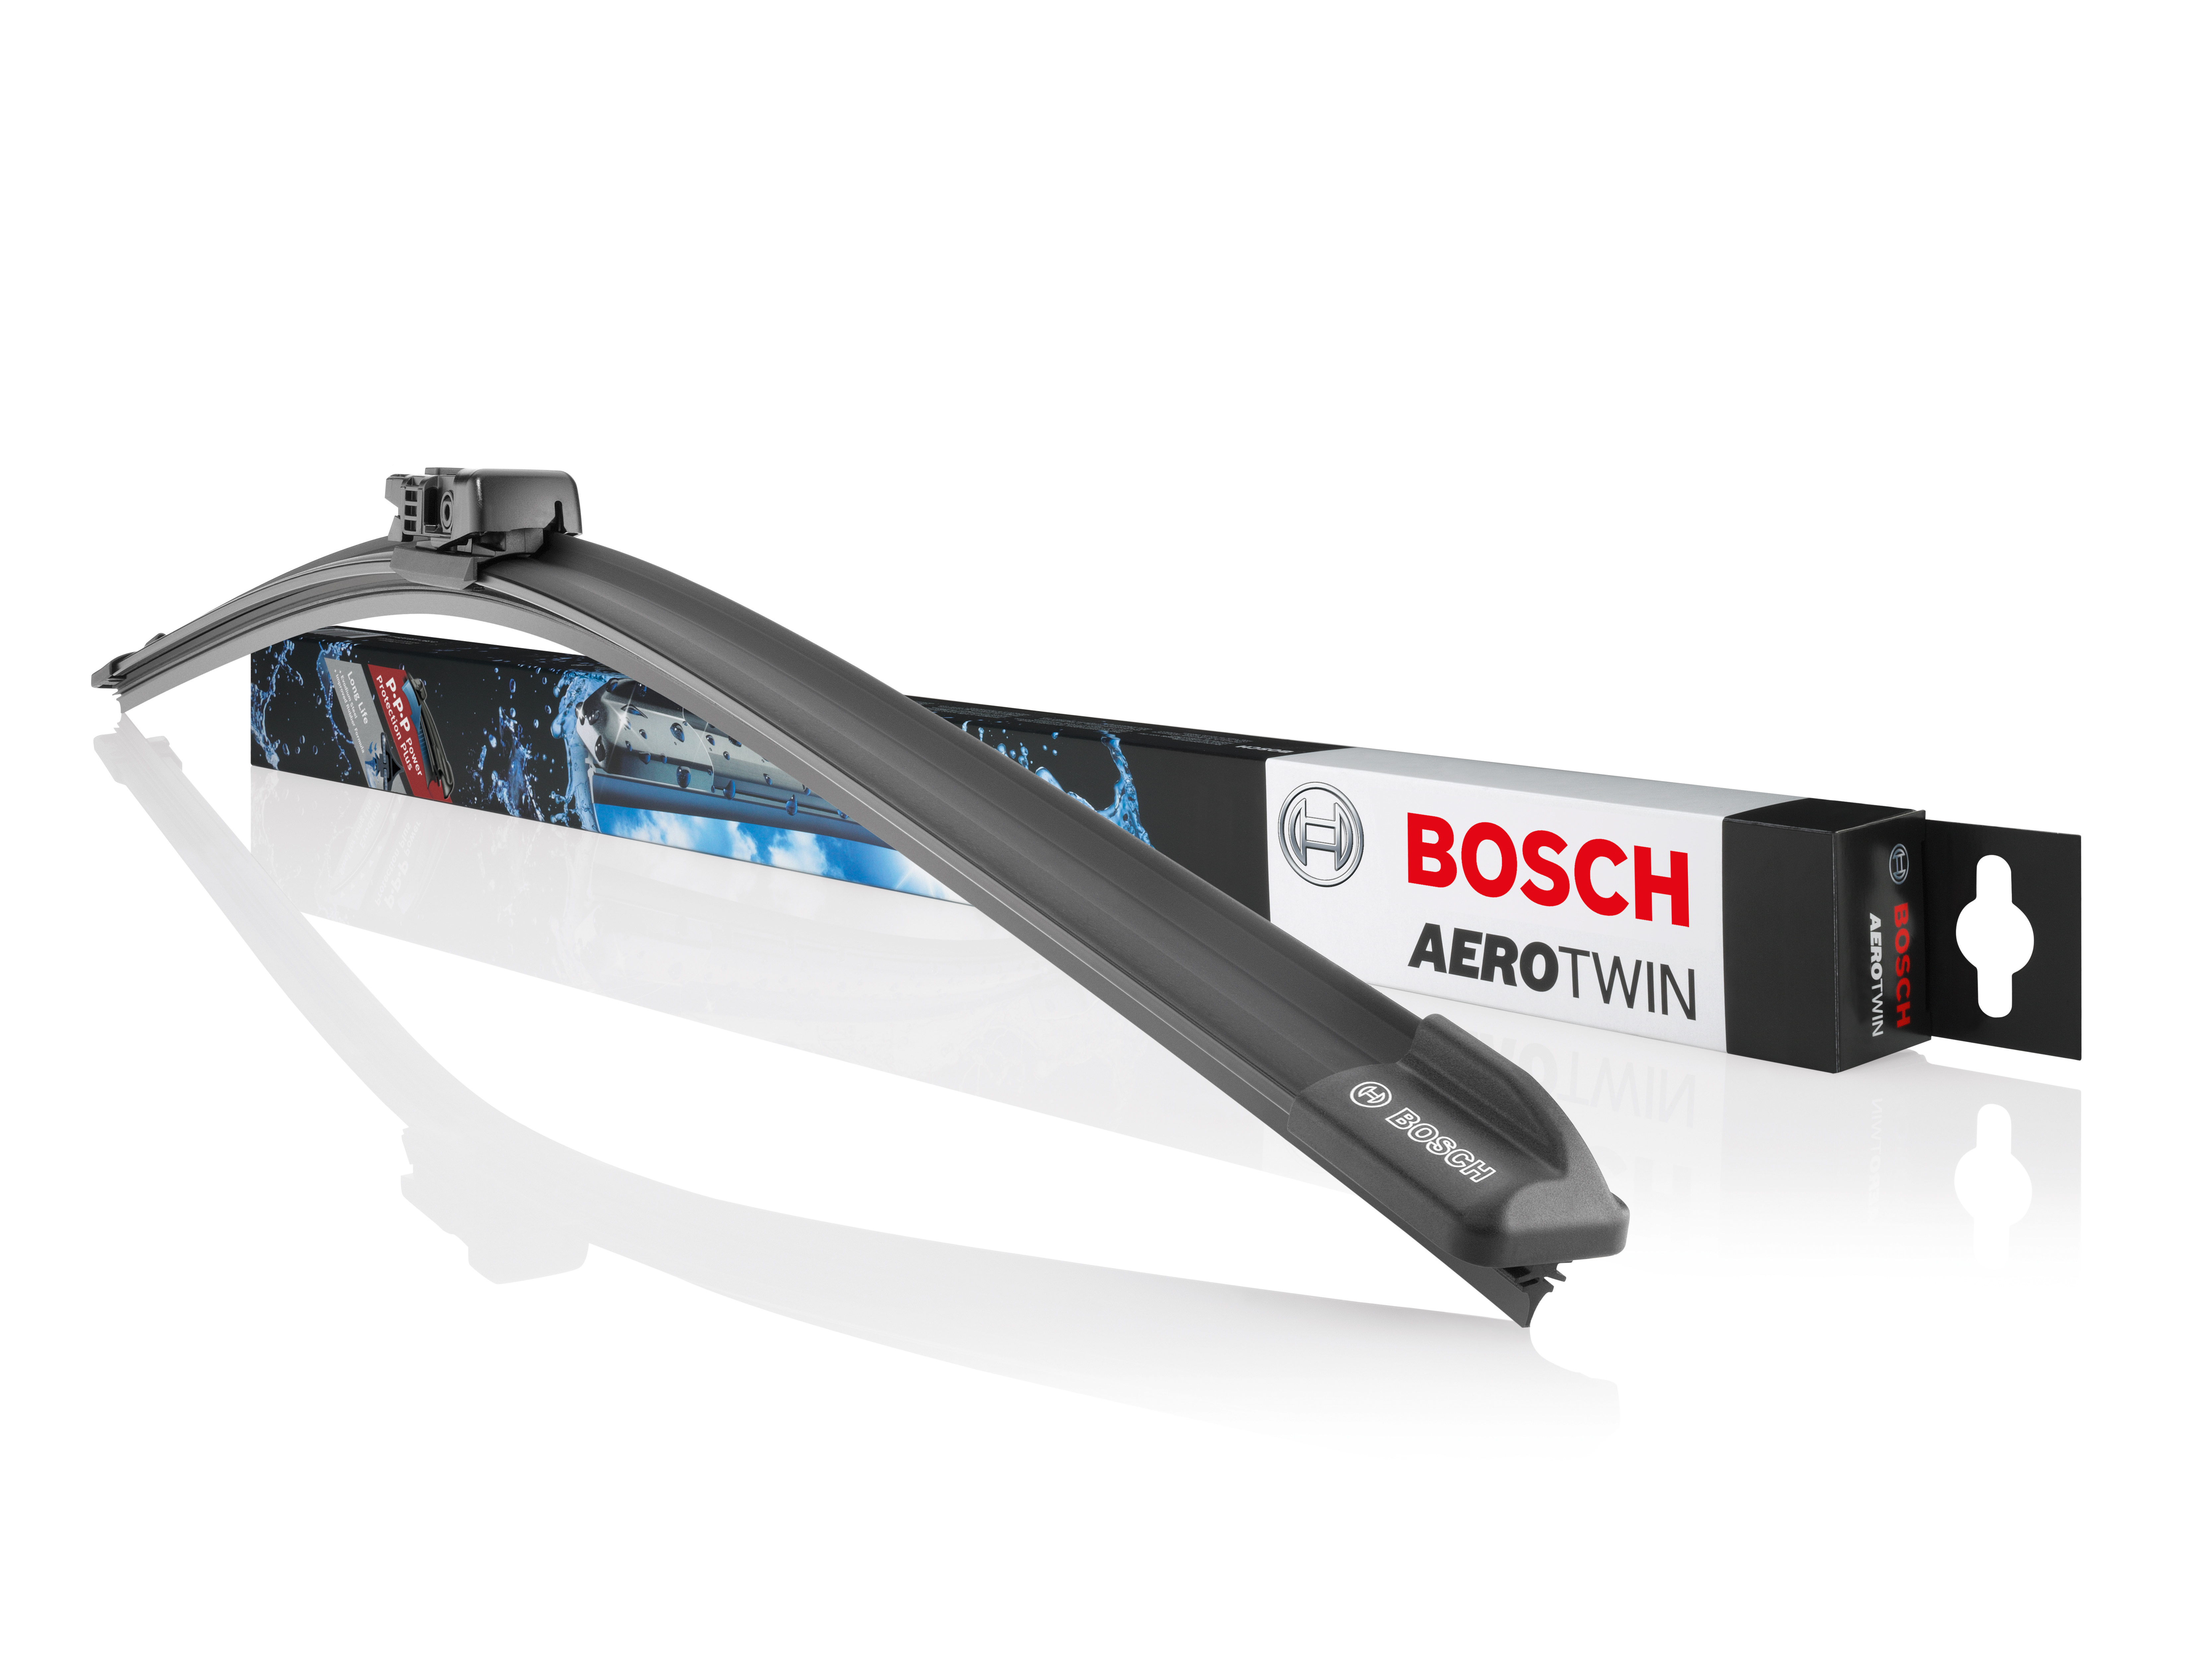 Tergicristalli Bosch Aerotwin con nuovo profilo della spazzola in